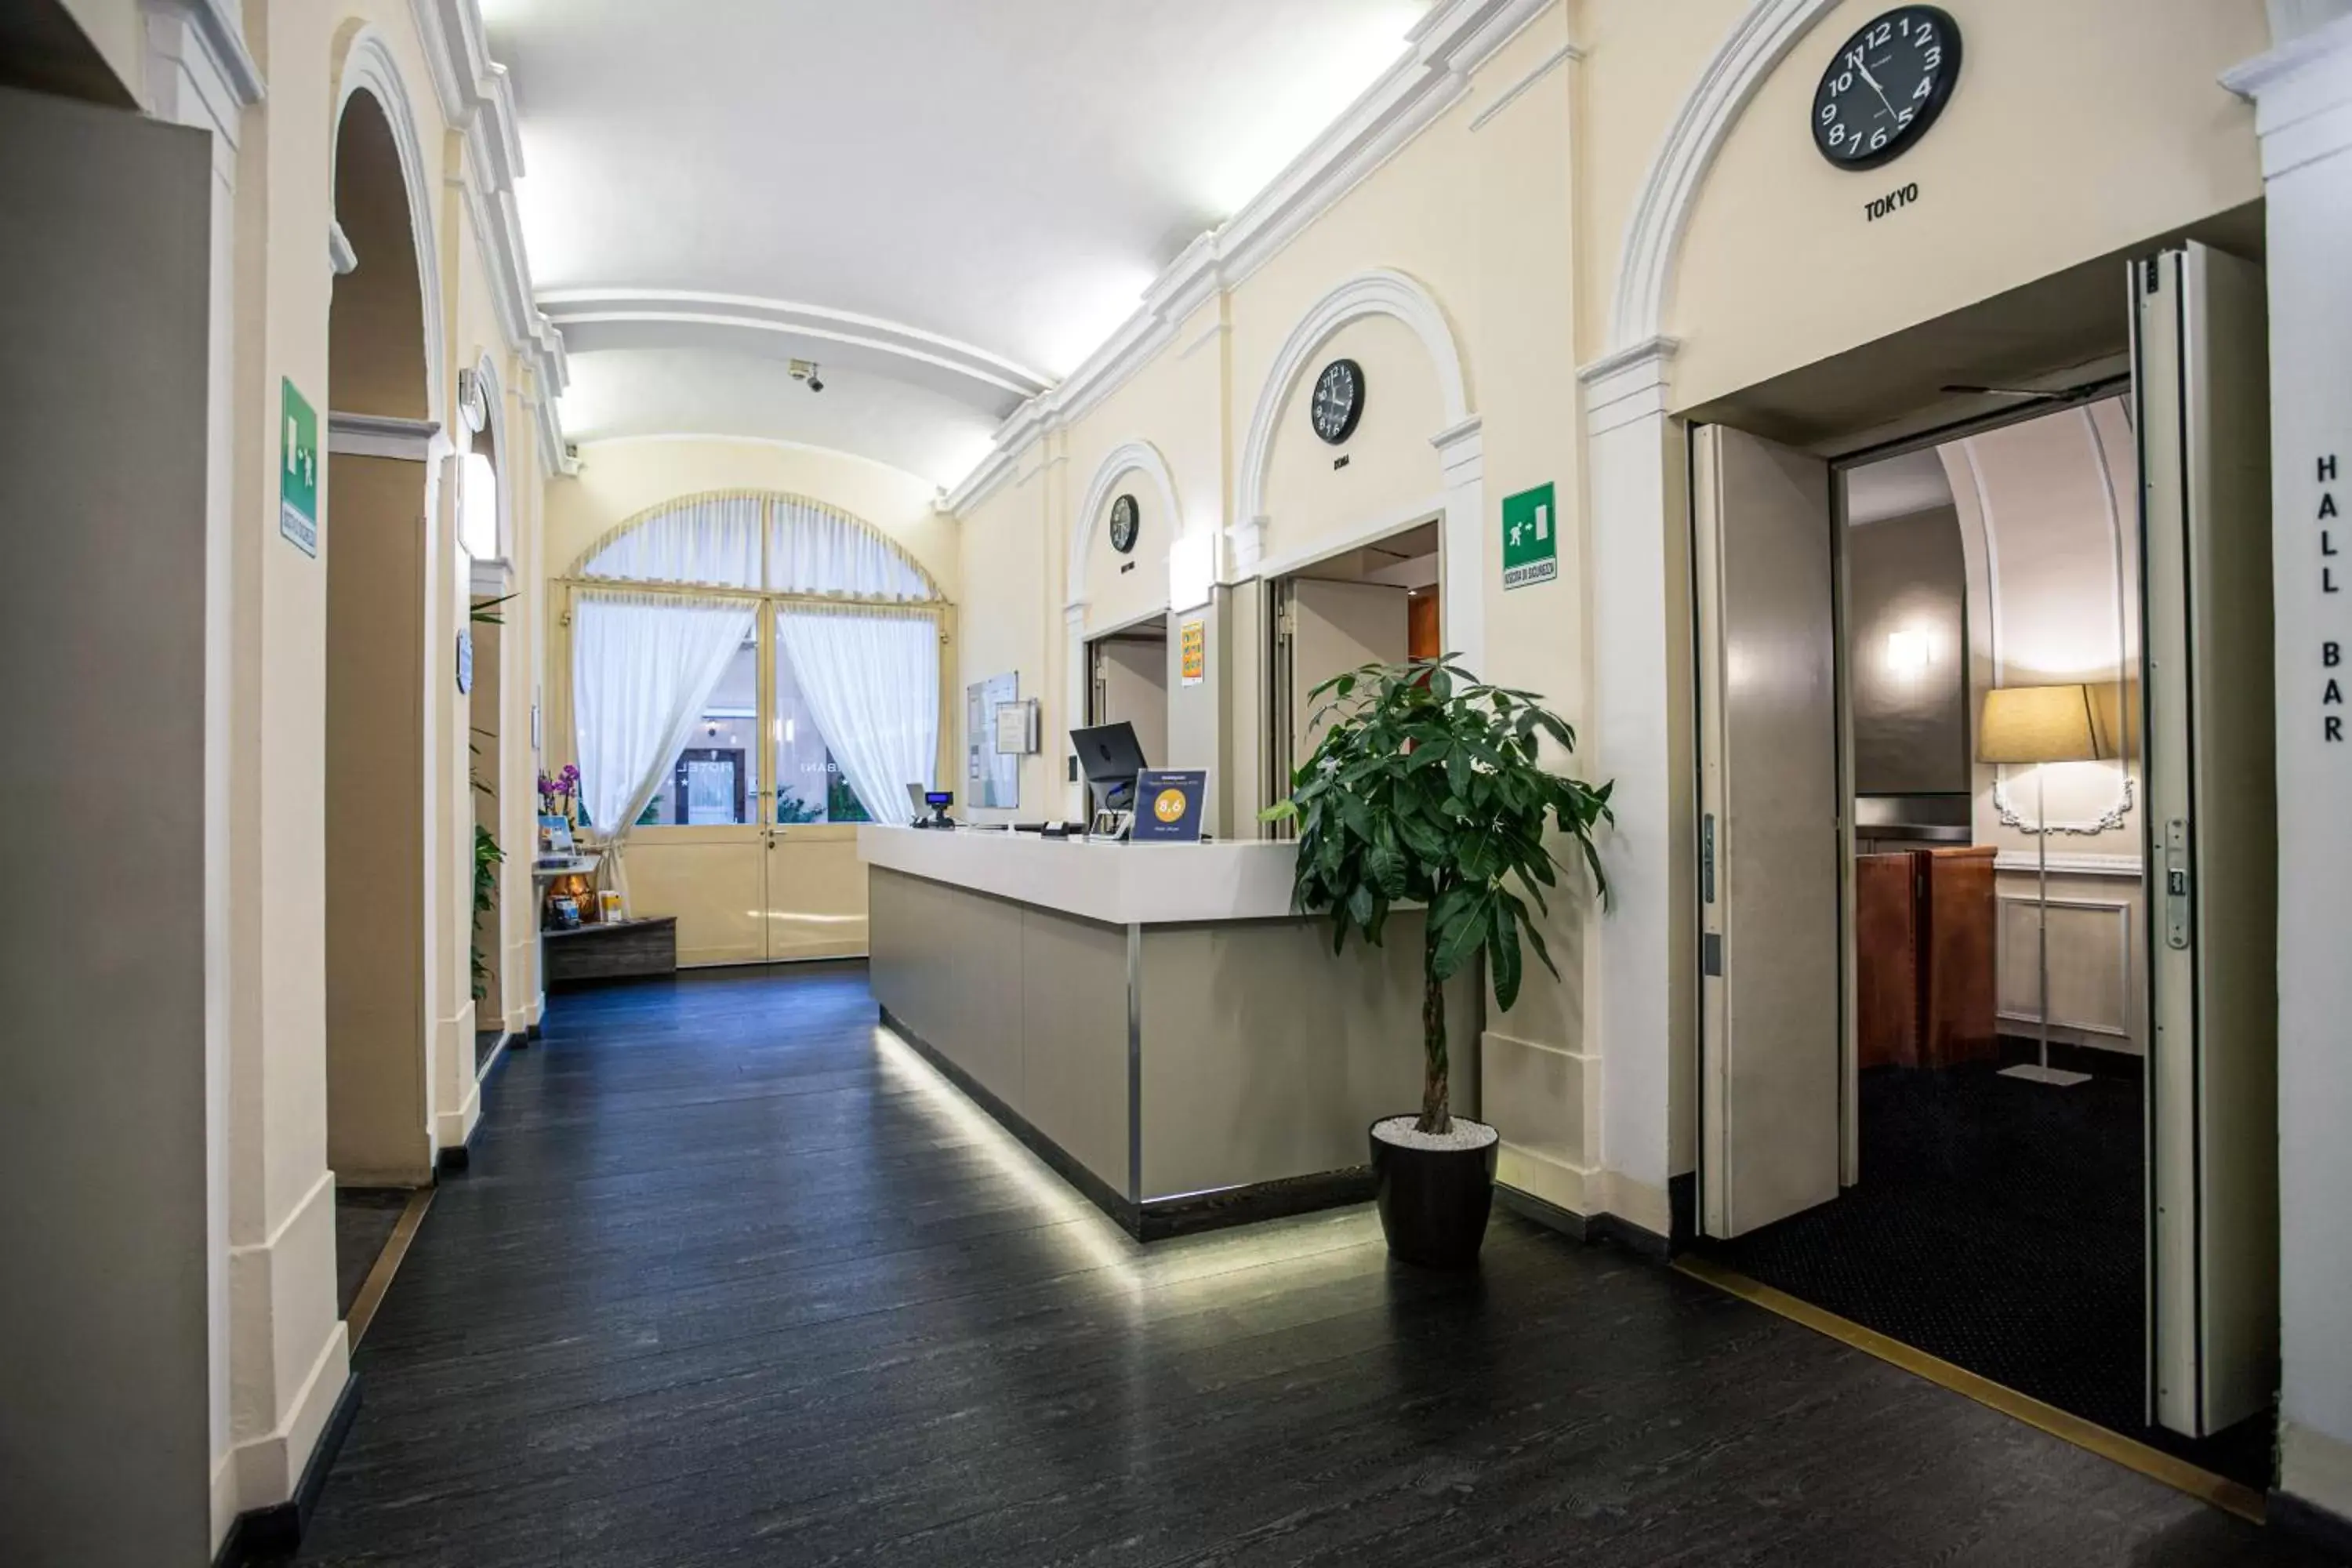 Lobby or reception, Lobby/Reception in Hotel Urbani